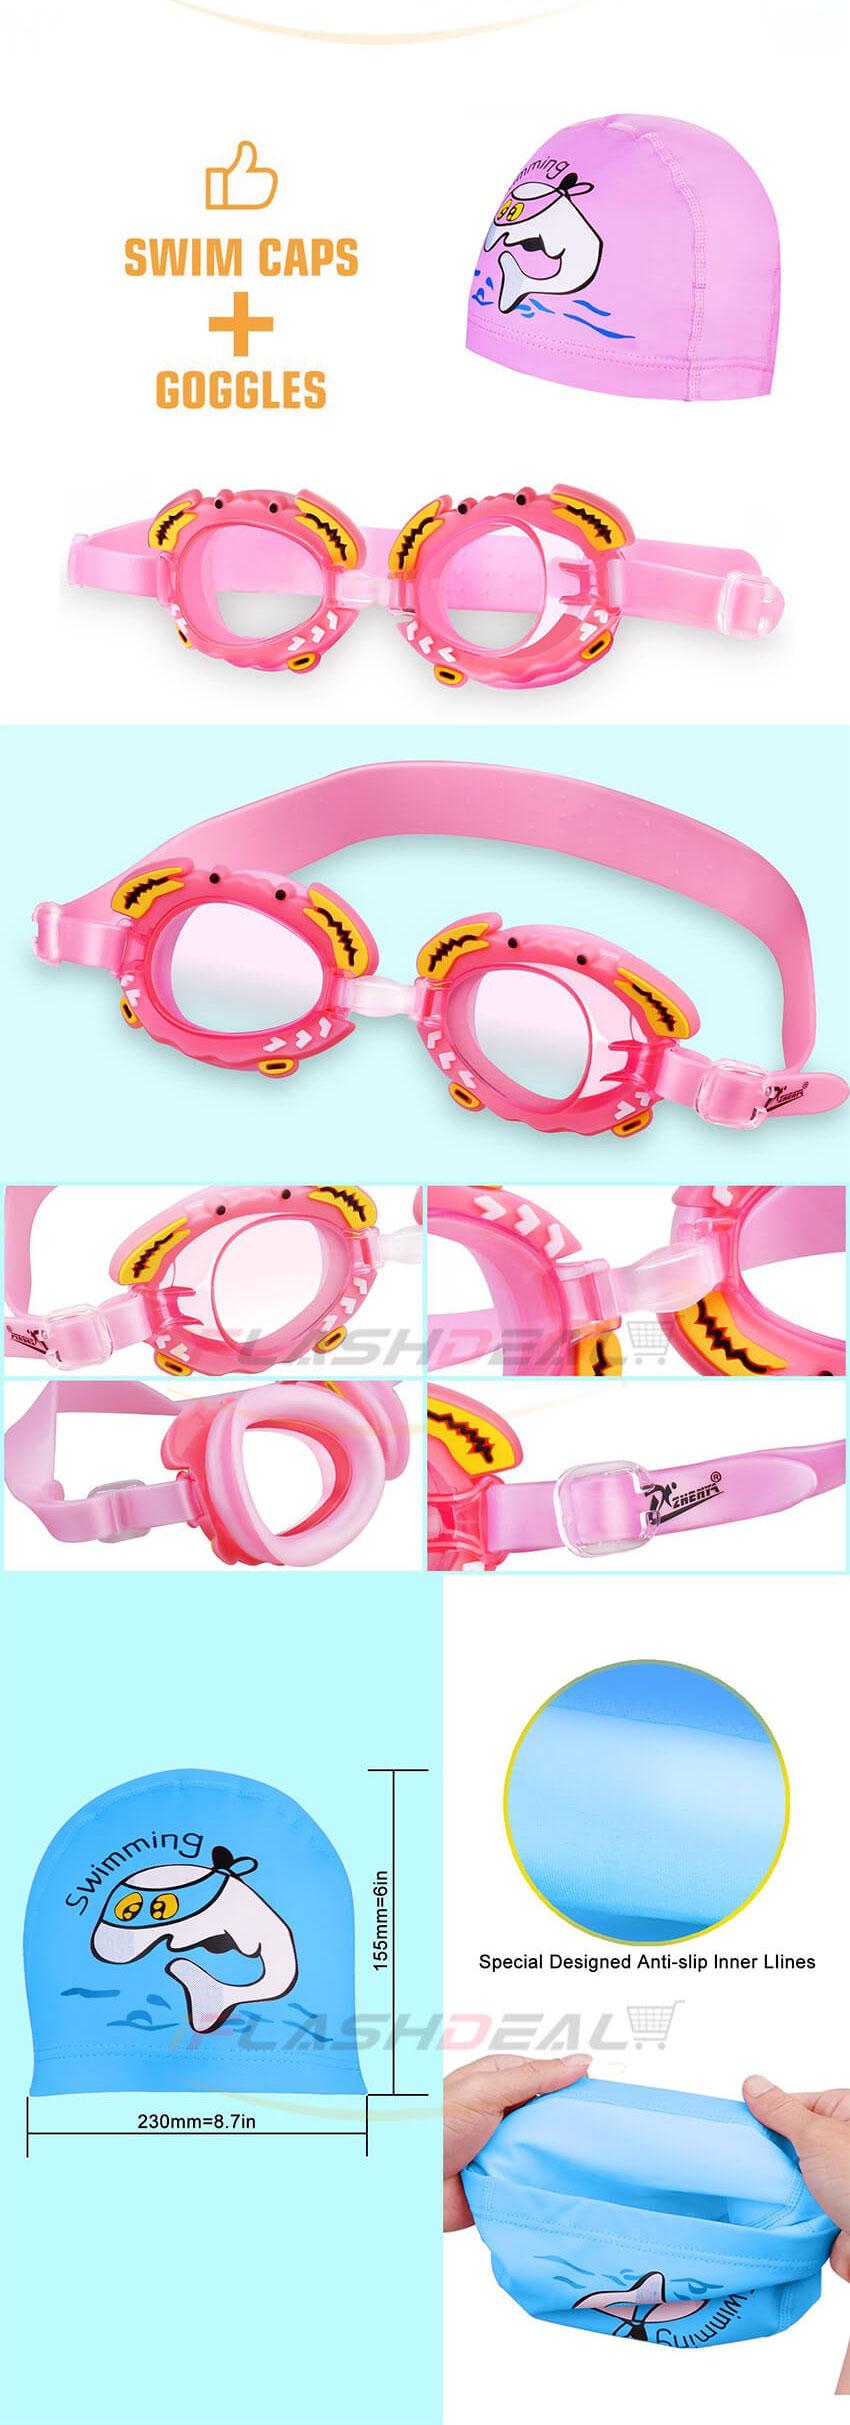 มุมมองเพิ่มเติมของสินค้า ชุดอุปกรณ์ แว่นว่ายน้ำ สำหรับเด็ก Swim Goggles Set for Kids มีหมวกว่ายน้ำ + แว่นว่ายน้ำ ครบชุด